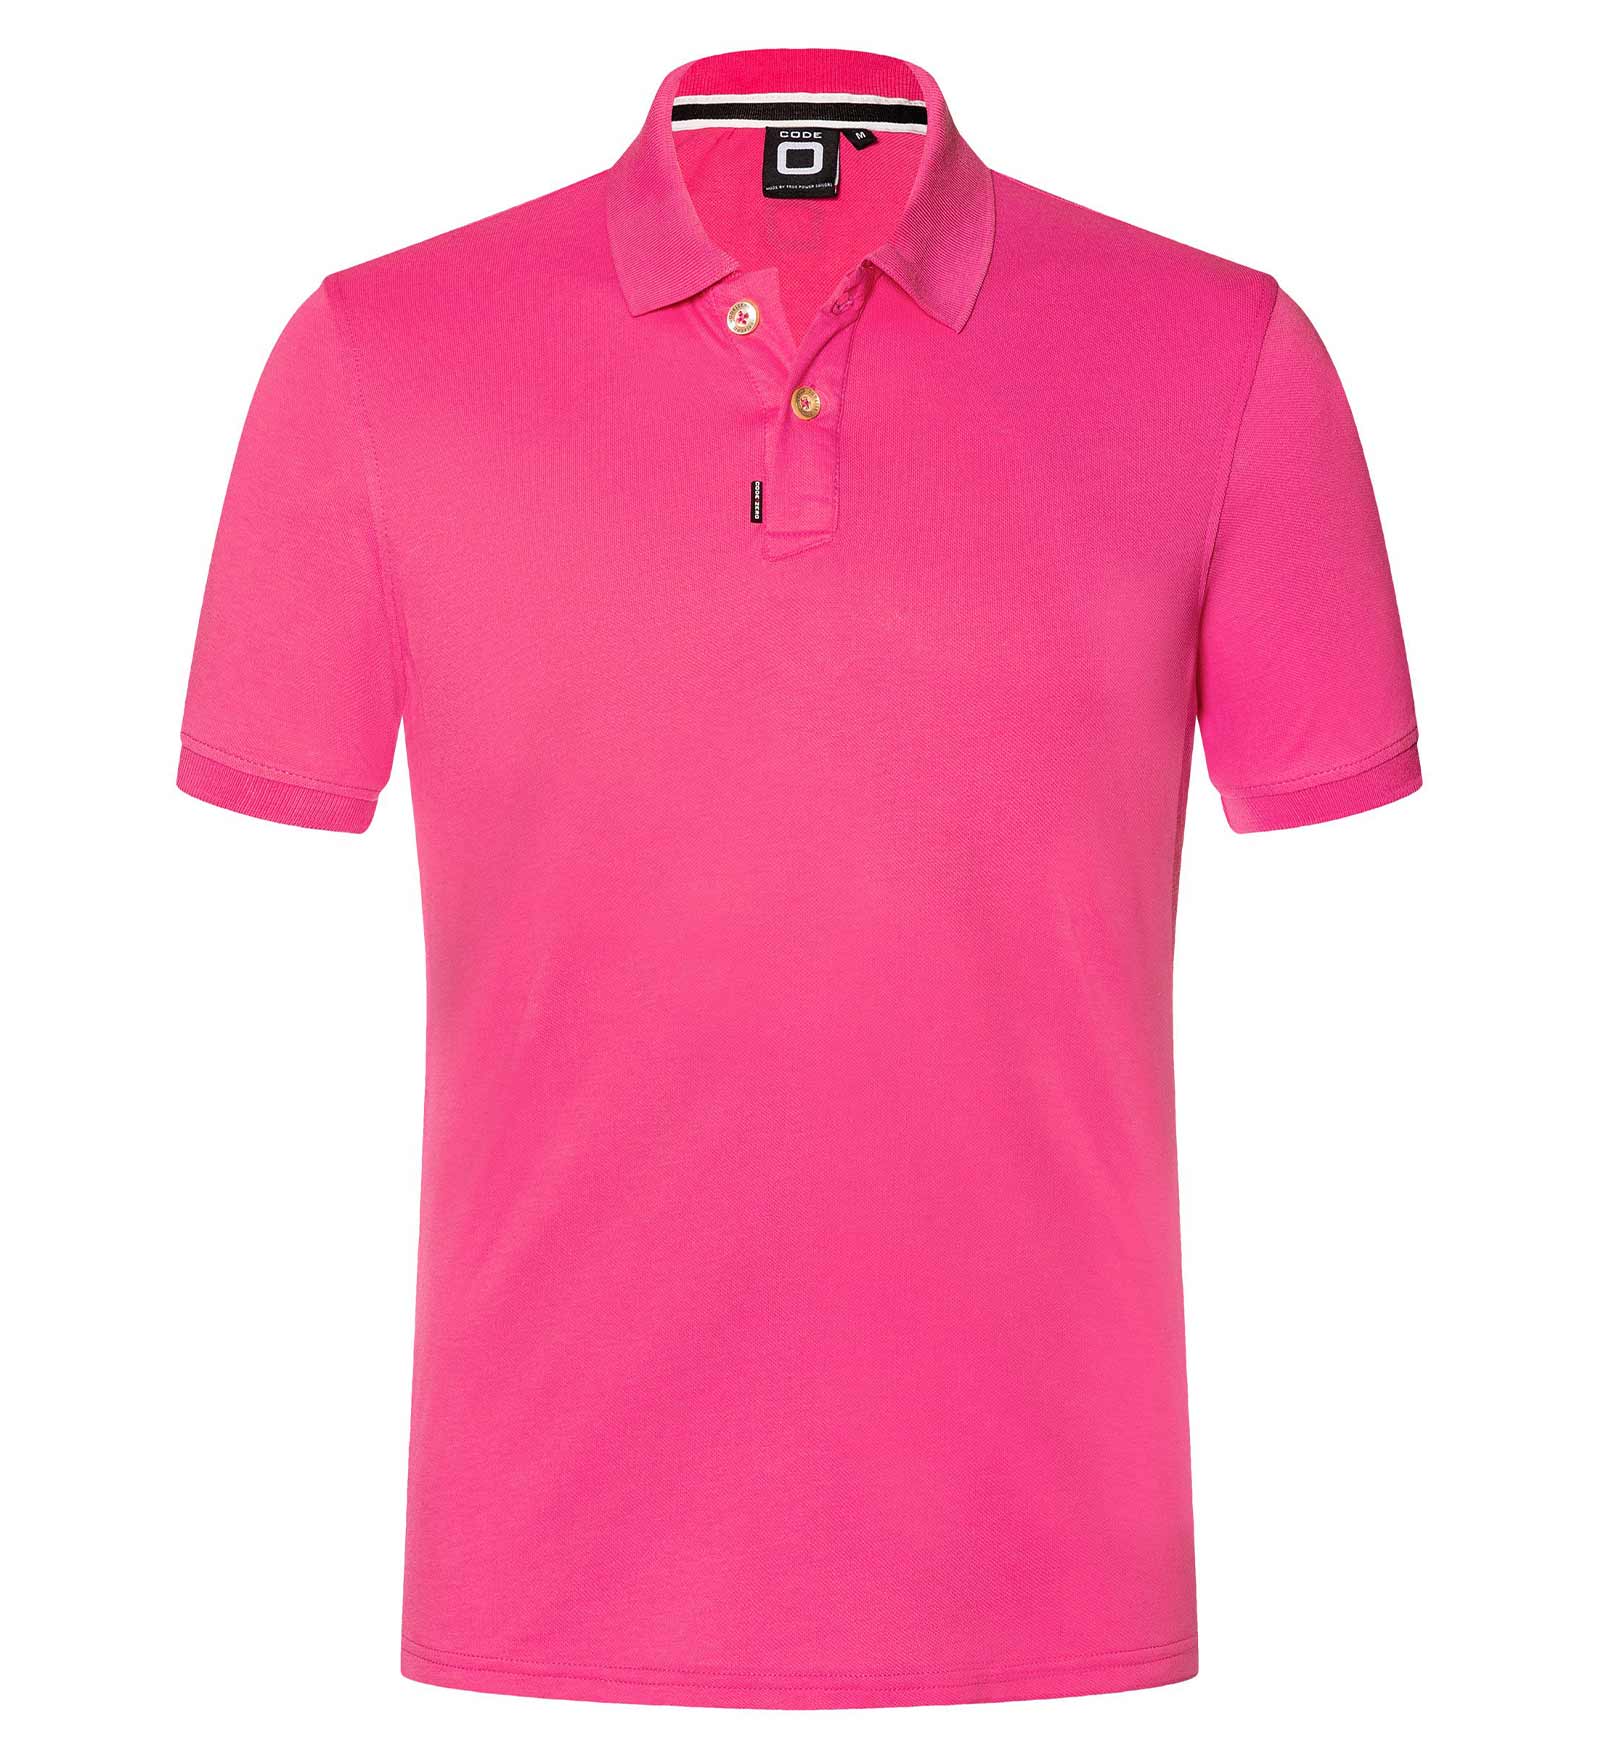 dealer gewoontjes gordijn Polo Shirt Men Performance L Neon Pink | CODE-ZERO Online Shop